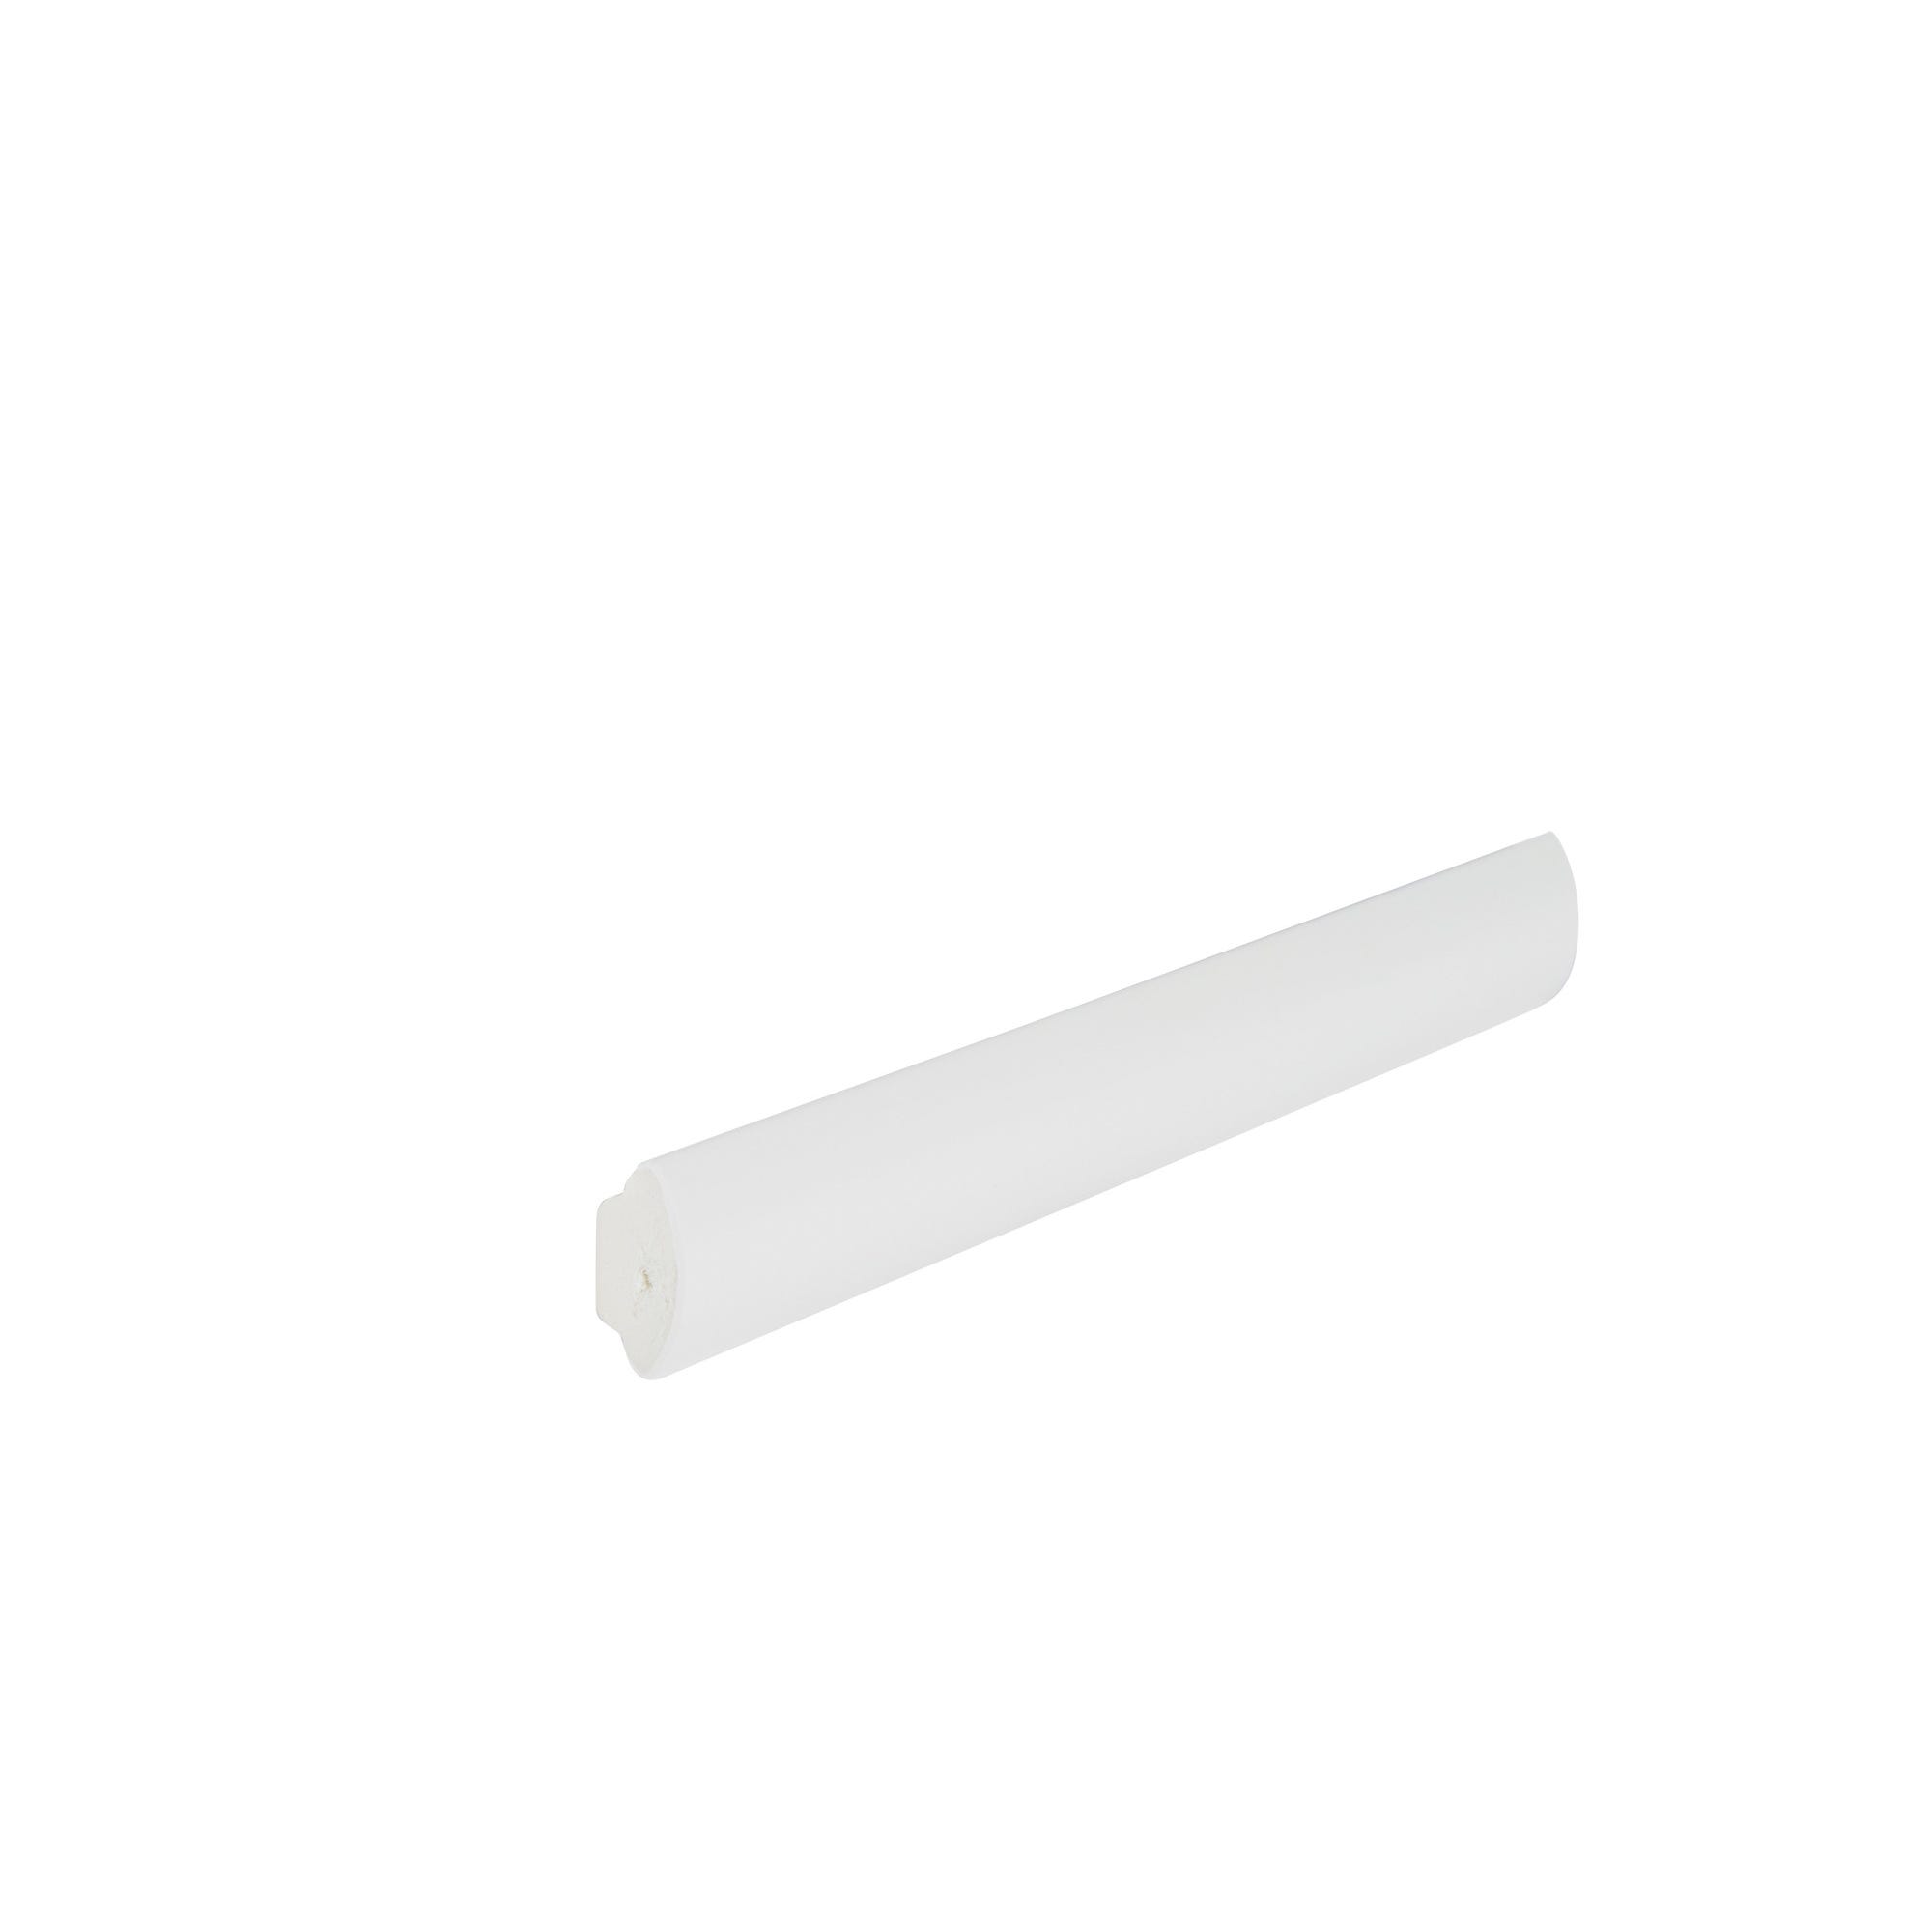 Quart de rond cellulaire blanc 17,5 mm Long.2,5 m 0